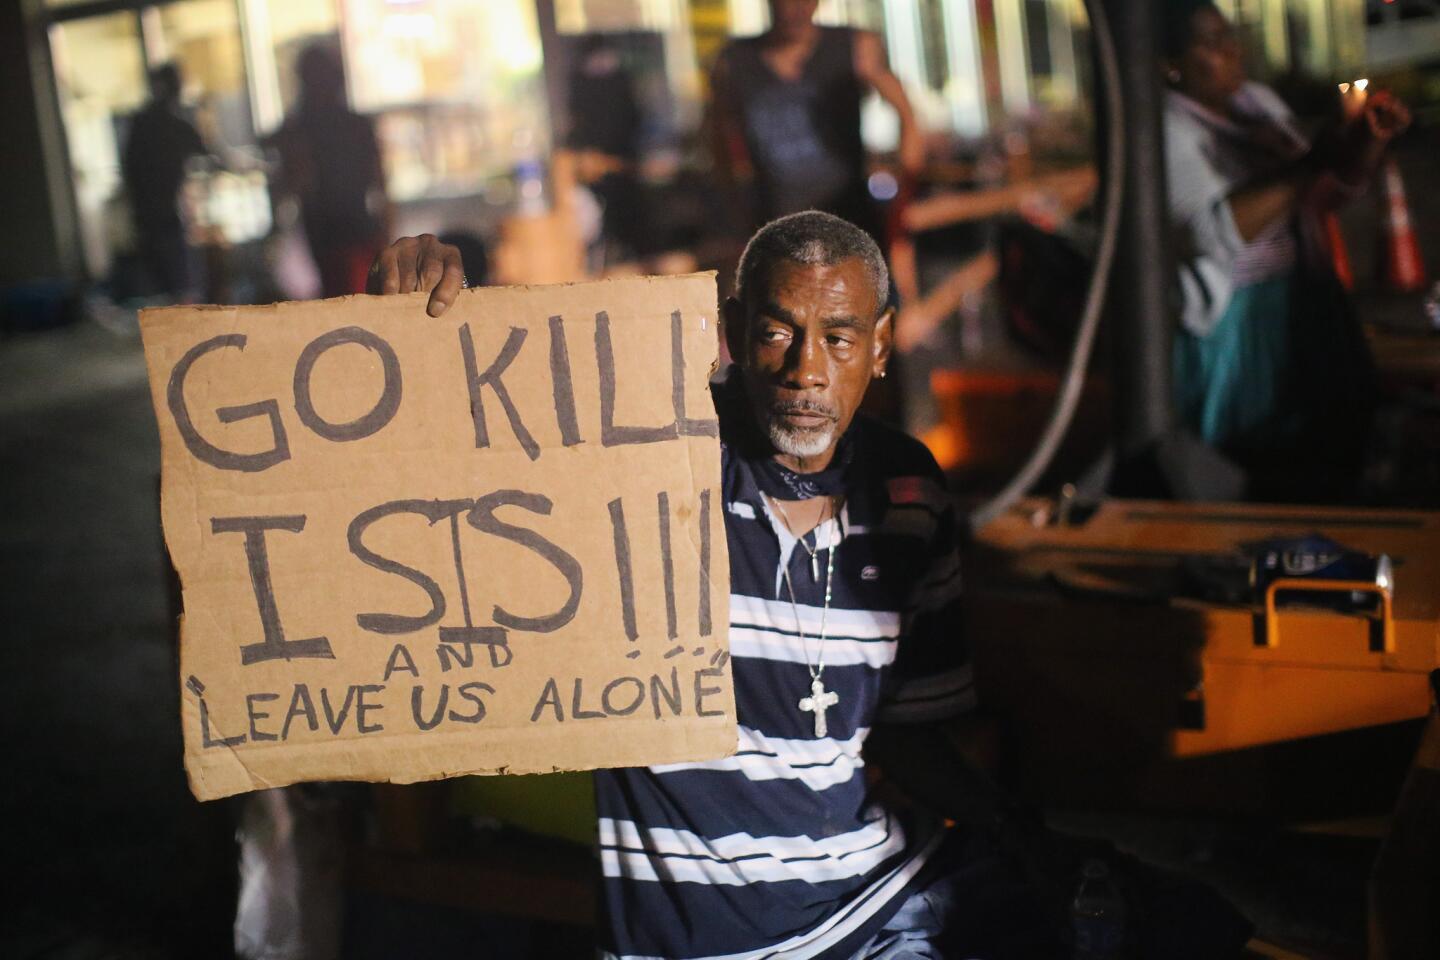 'Go Kill ISIS'